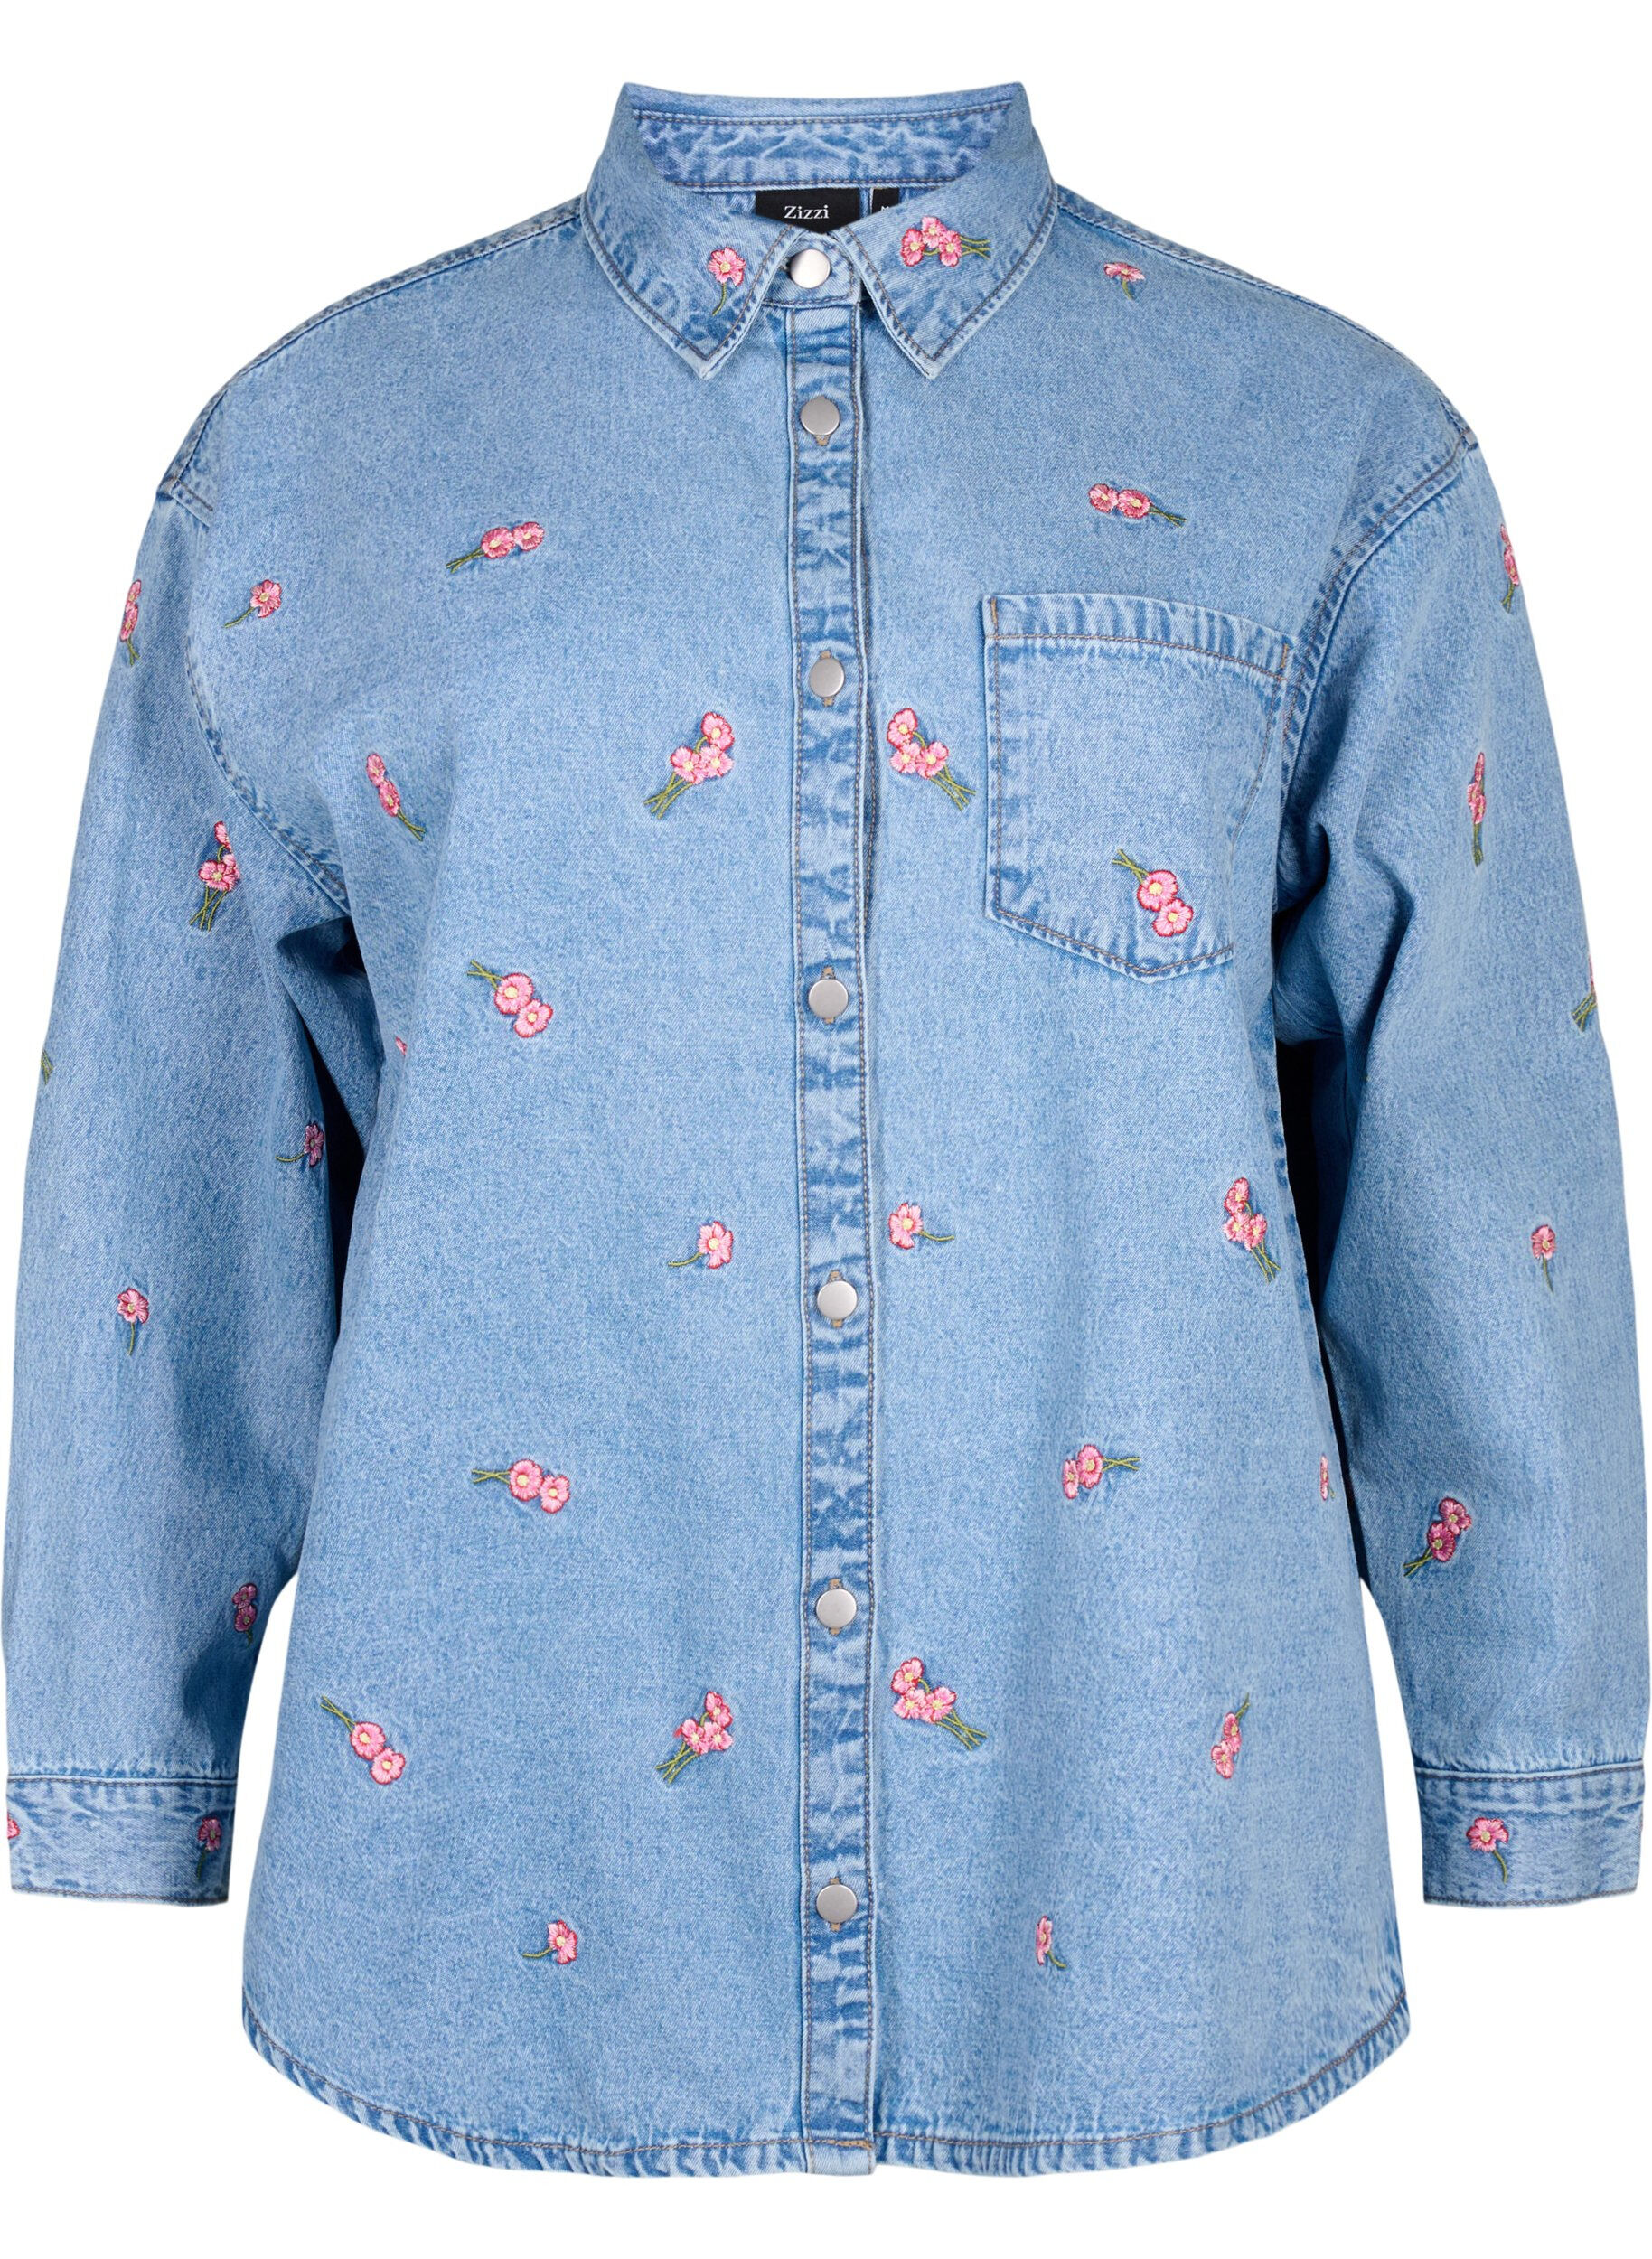 Embroidered Denim Shirt Vintage Blue – CARAVANA